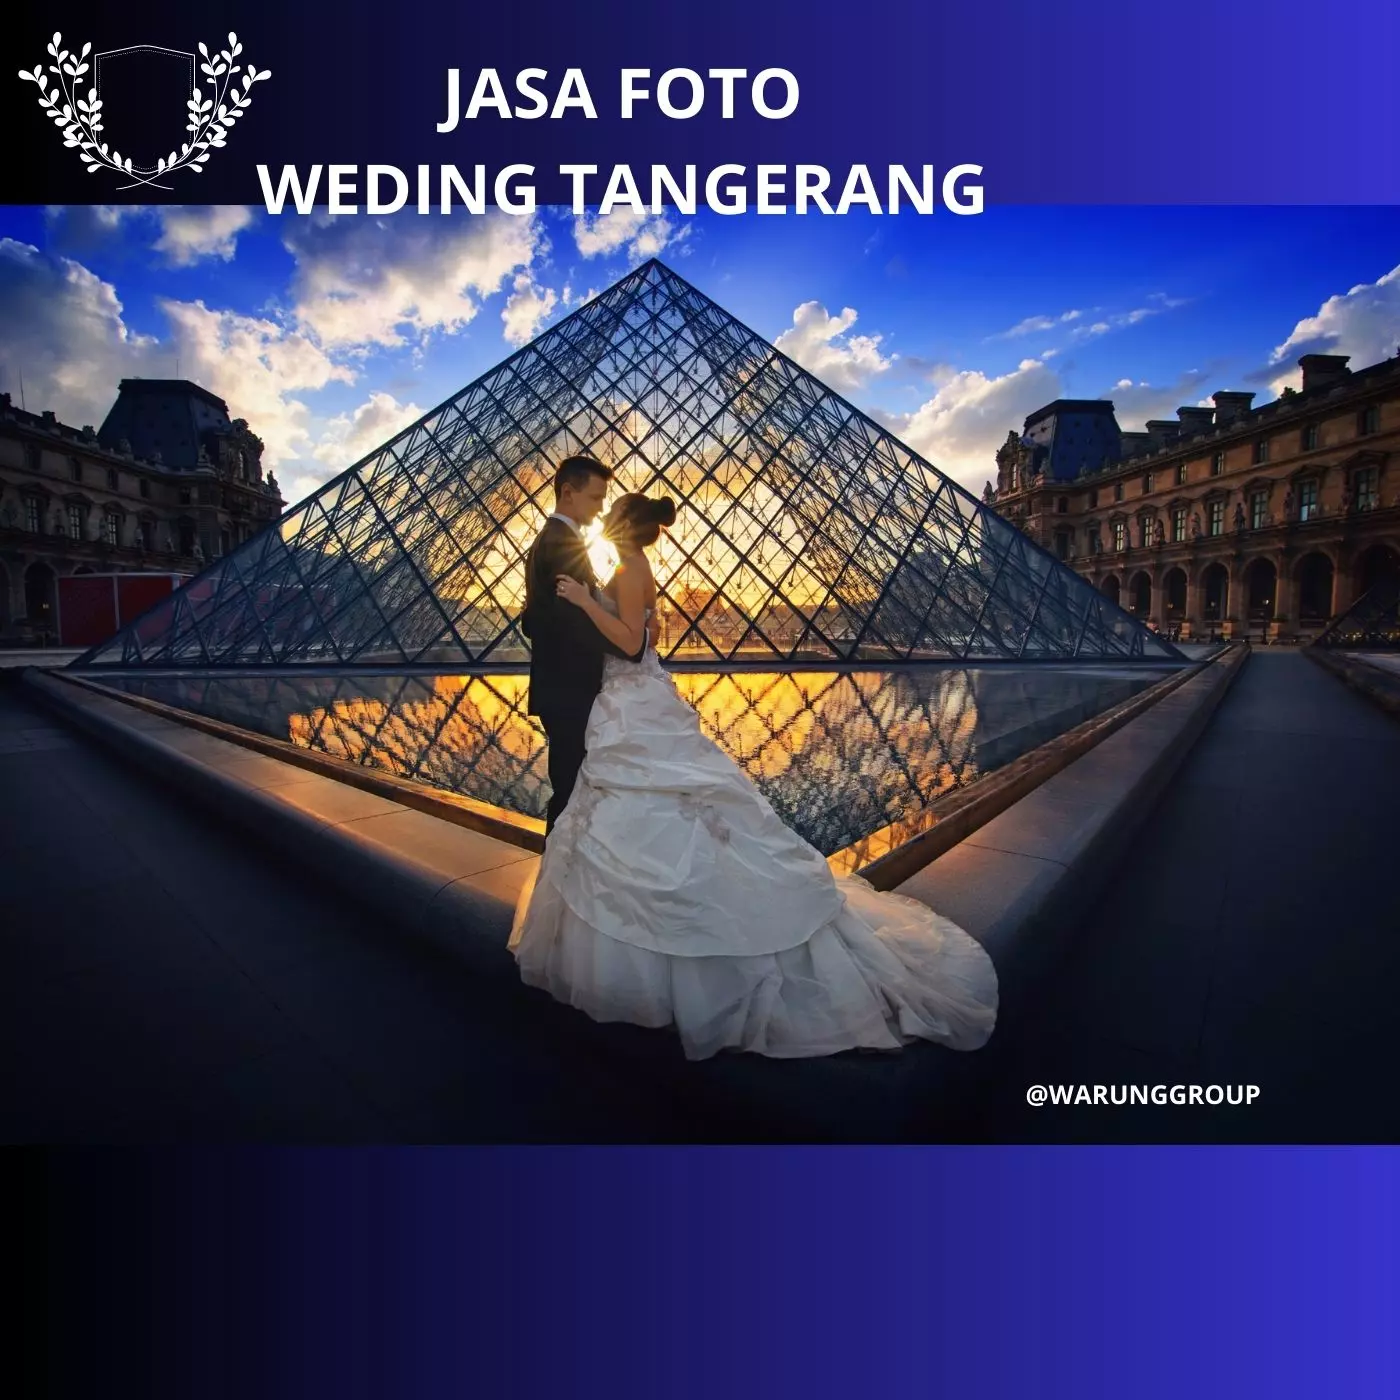 Jasa Foto Wedding Tangerang